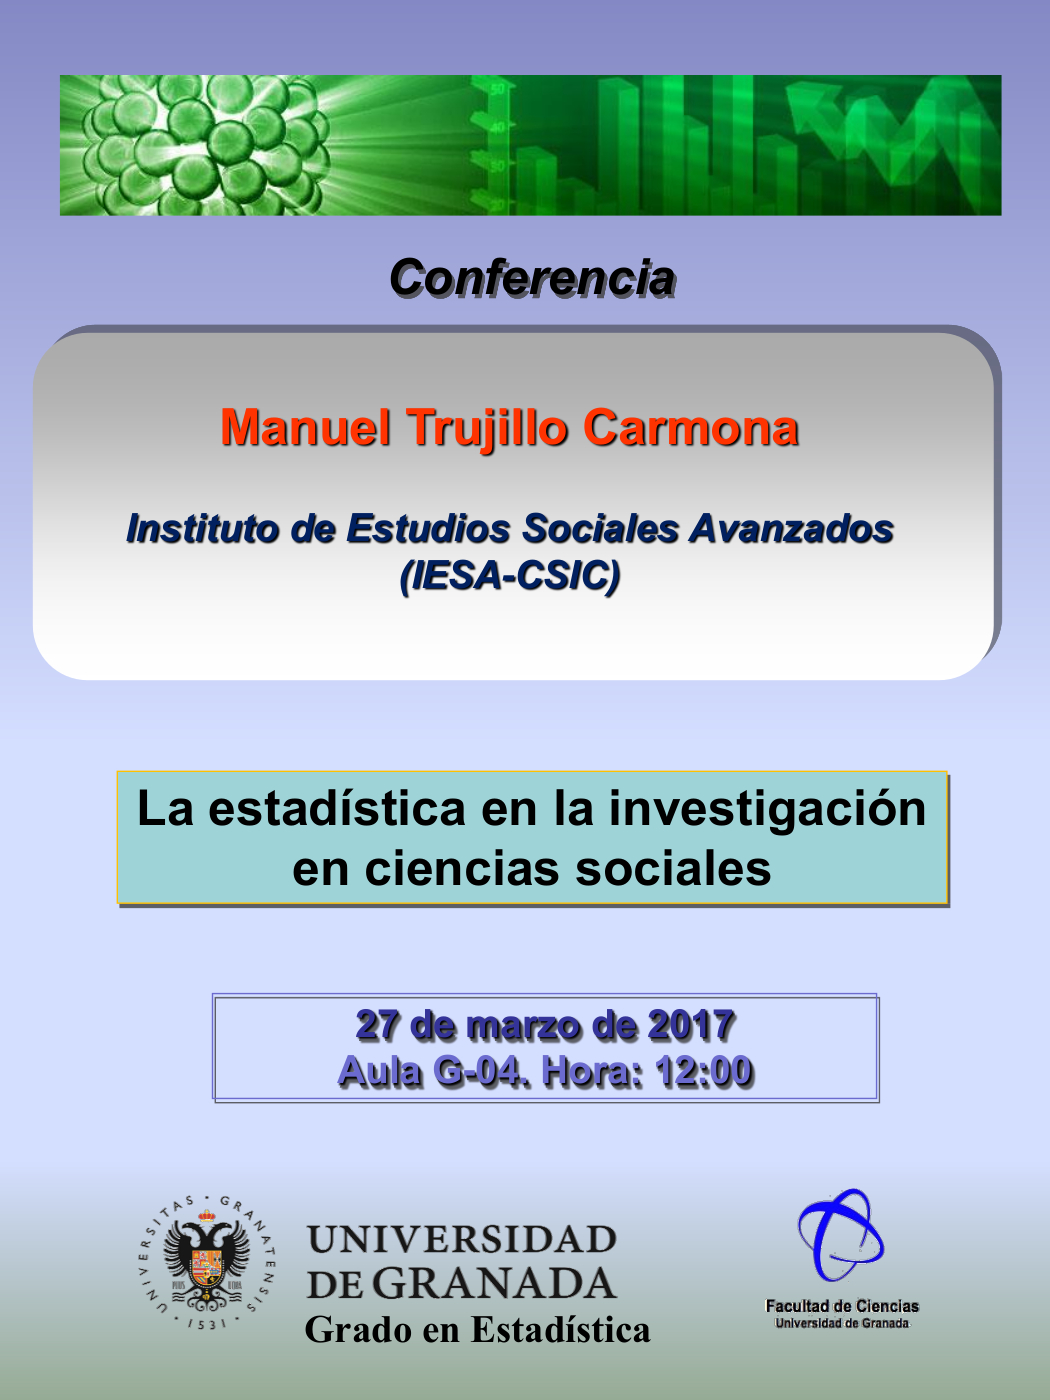 Conferencia "La estadística en la investigación en ciencias sociales"